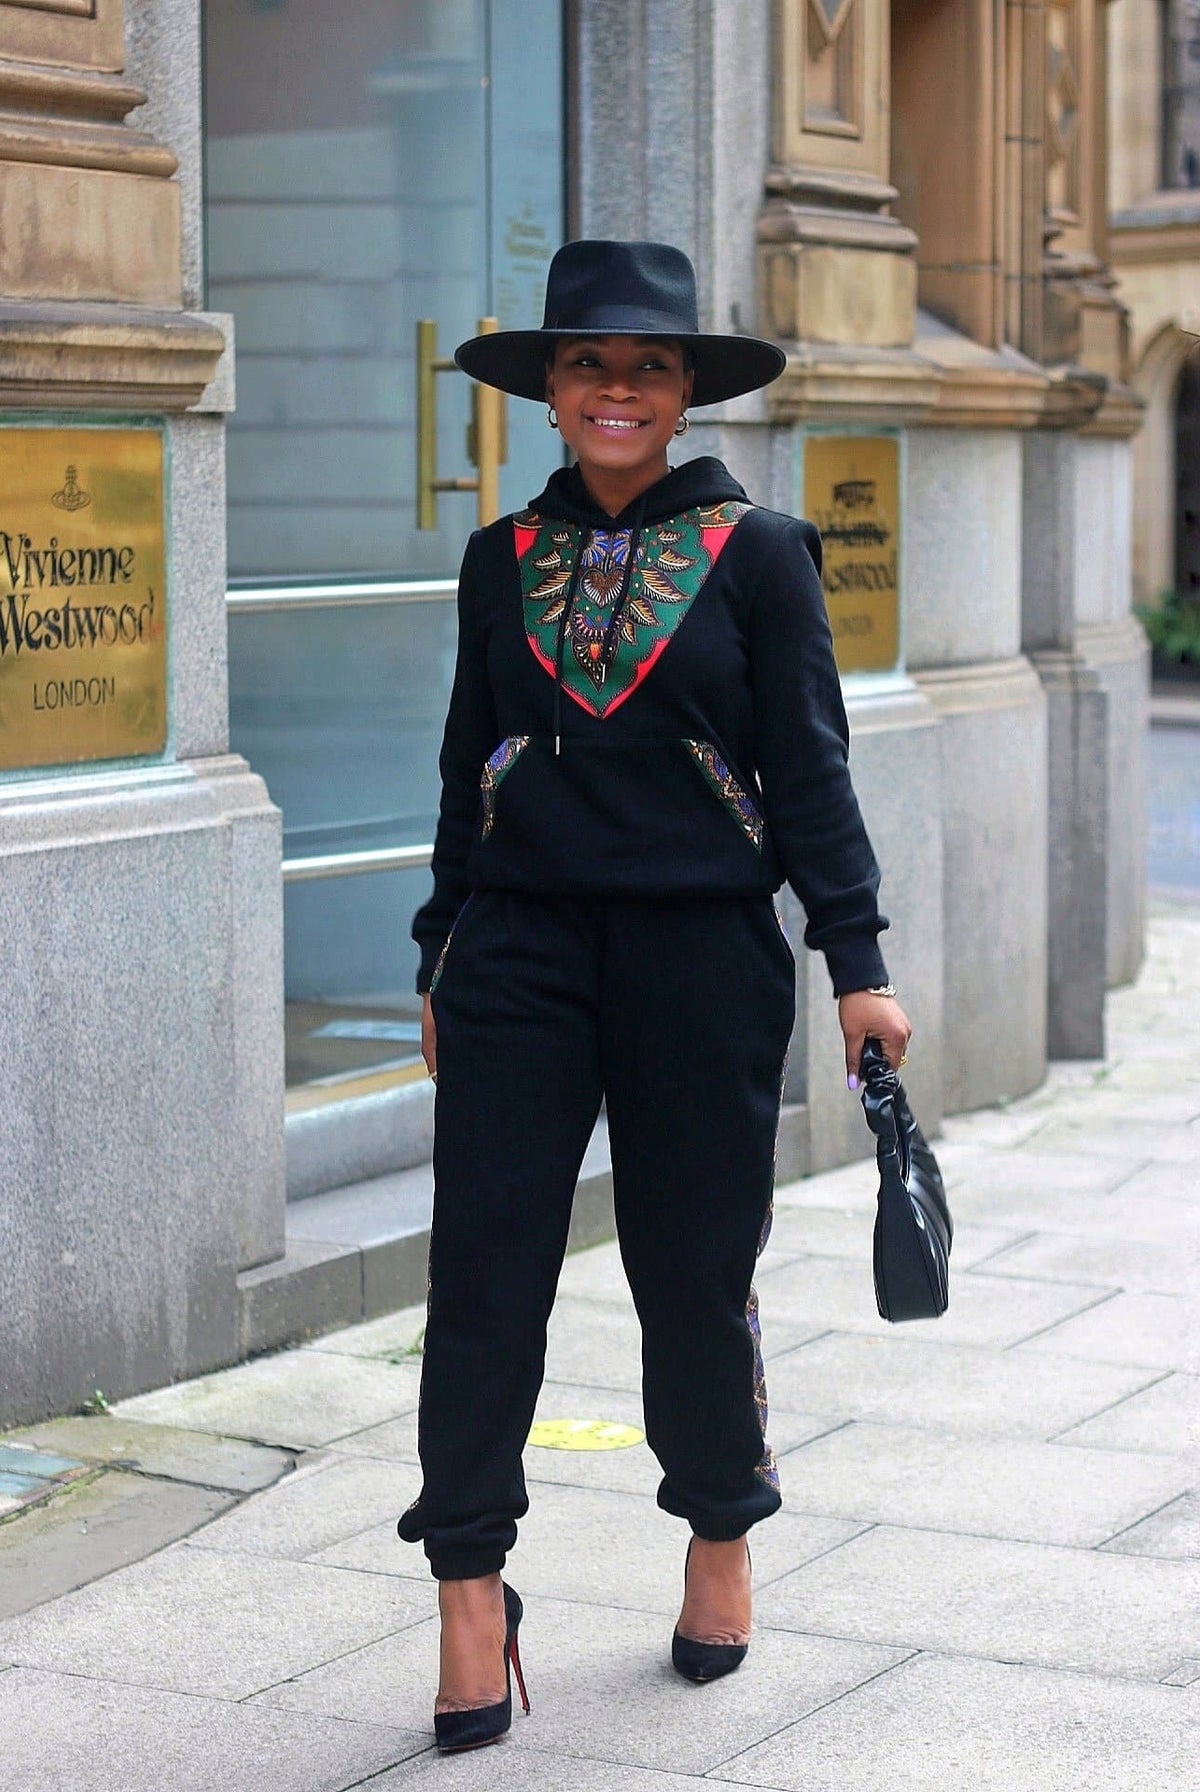 African Clothing | African Print Hoodie/Sweatshirts - Shop CUMO London ...